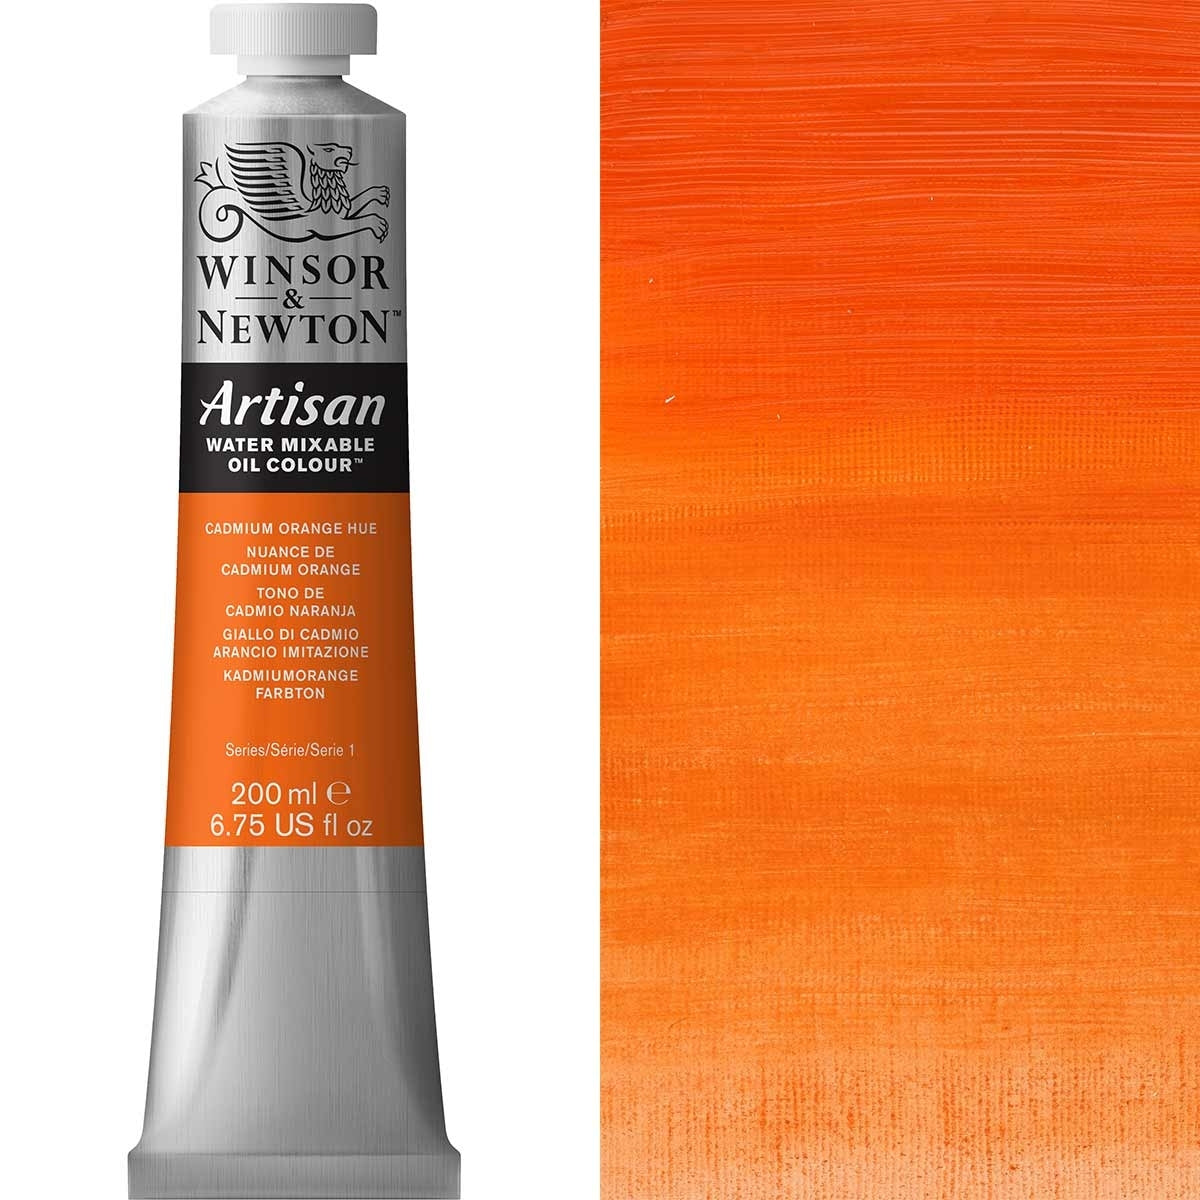 Winsor e Newton - Watermixable di colore olio artigianale - 200 ml - tonalità arancione cadmio